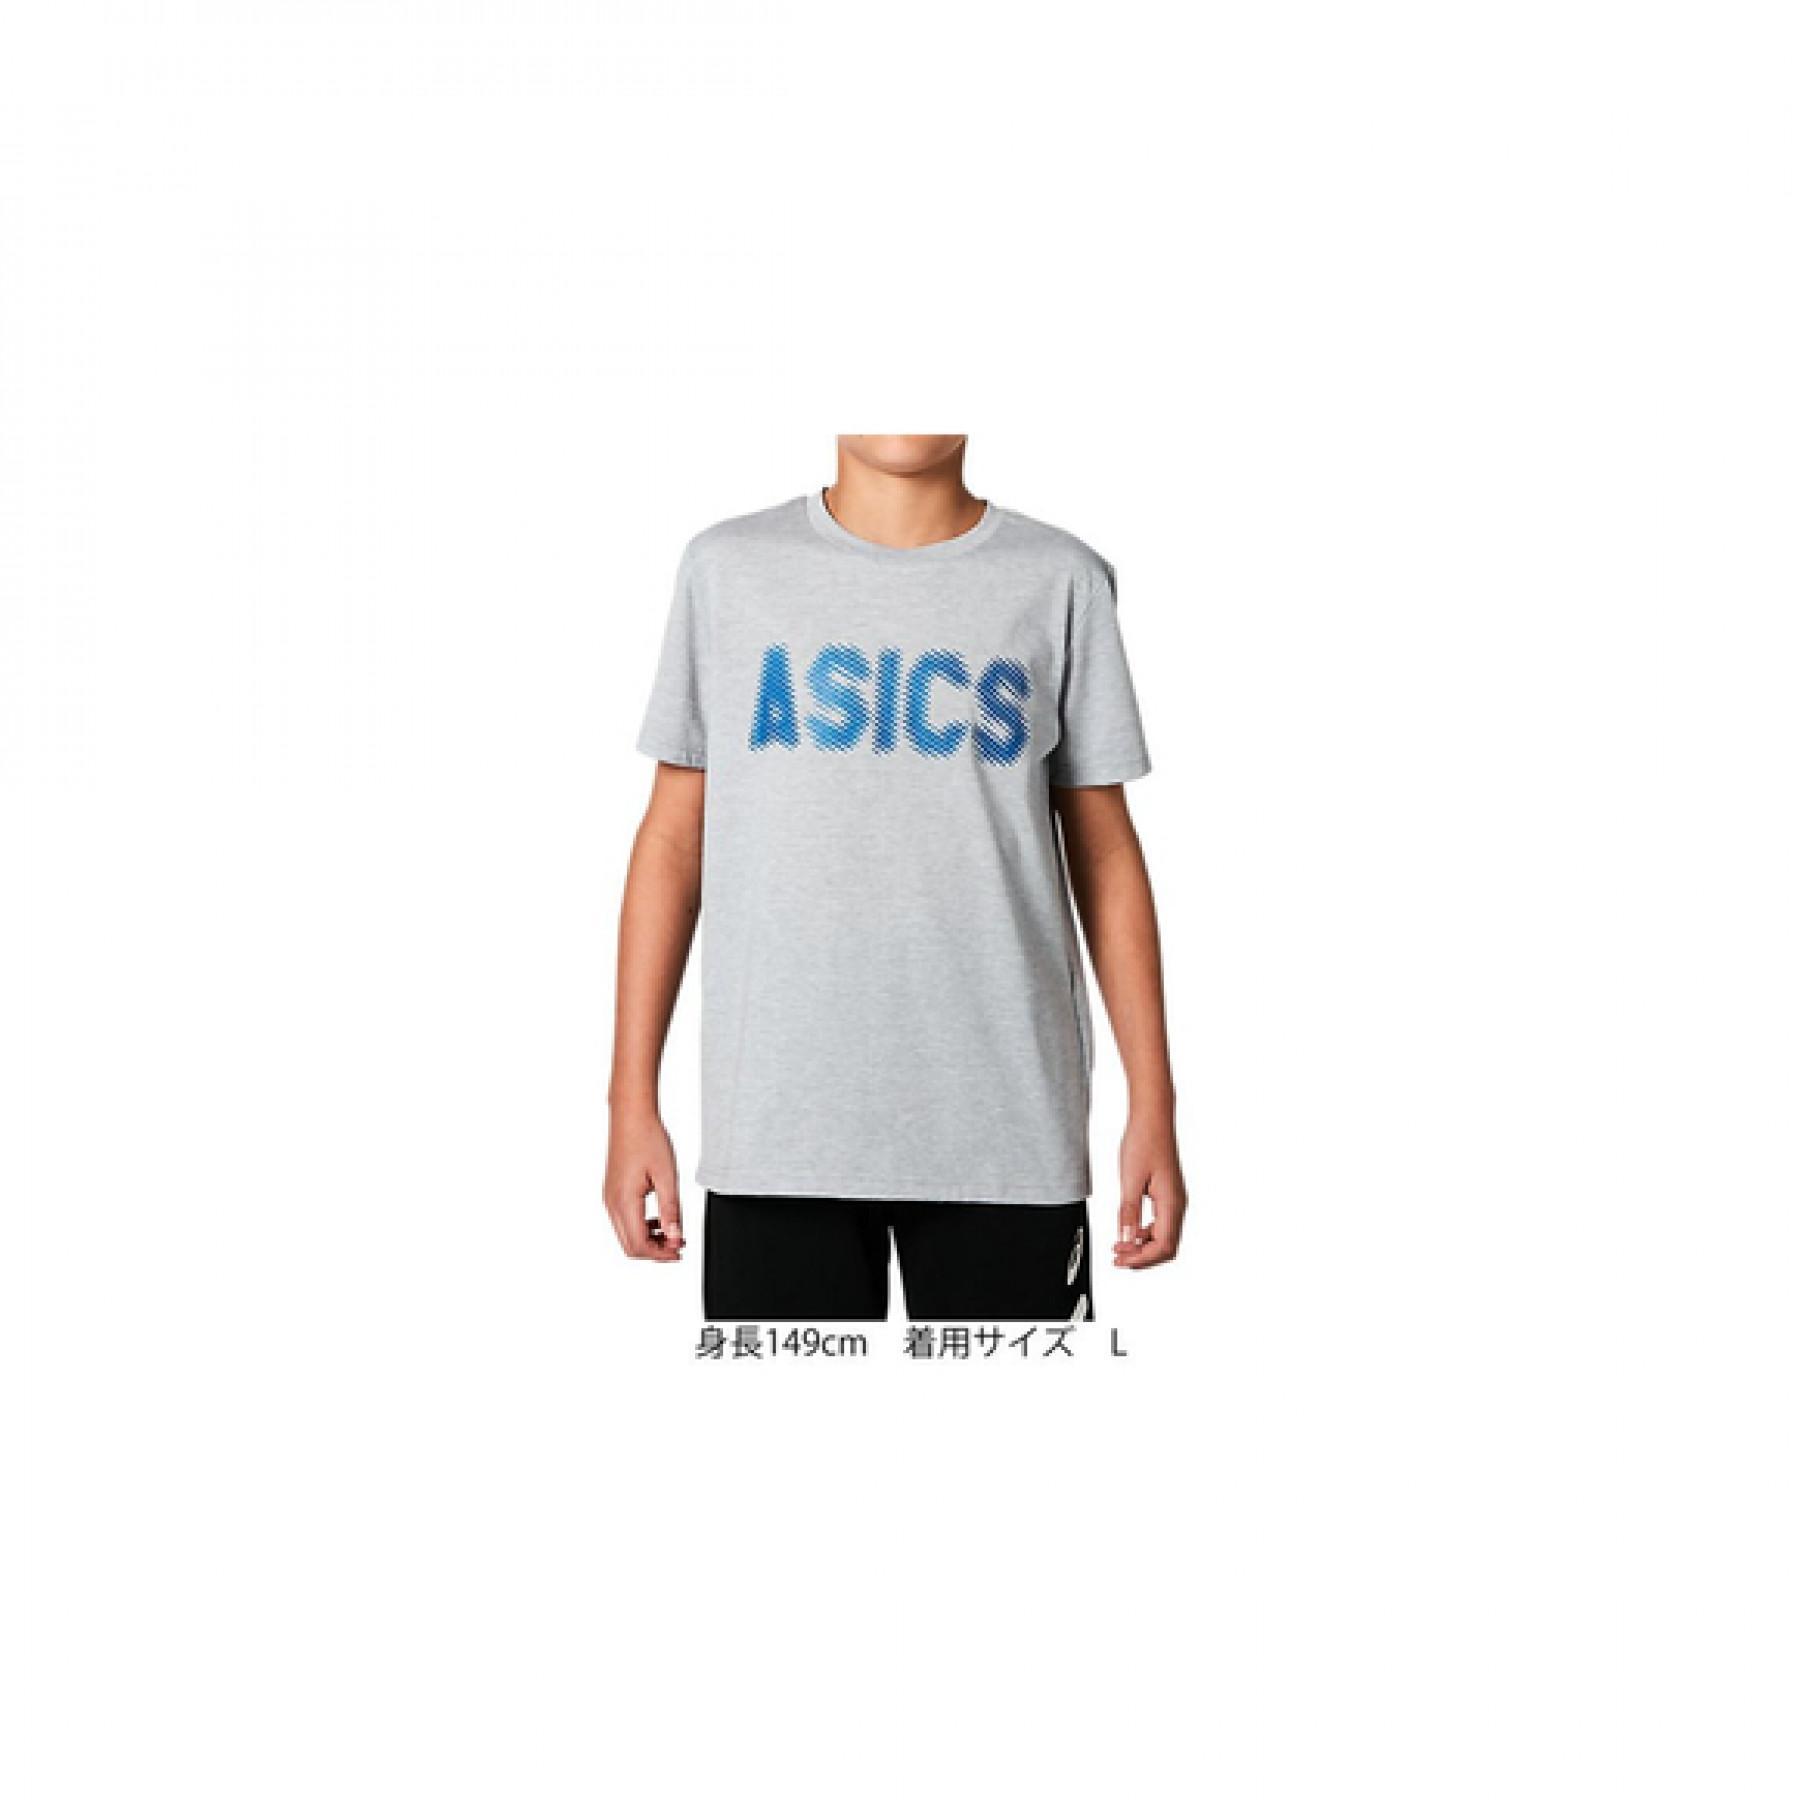 Maglietta per bambini Asics Gpxt